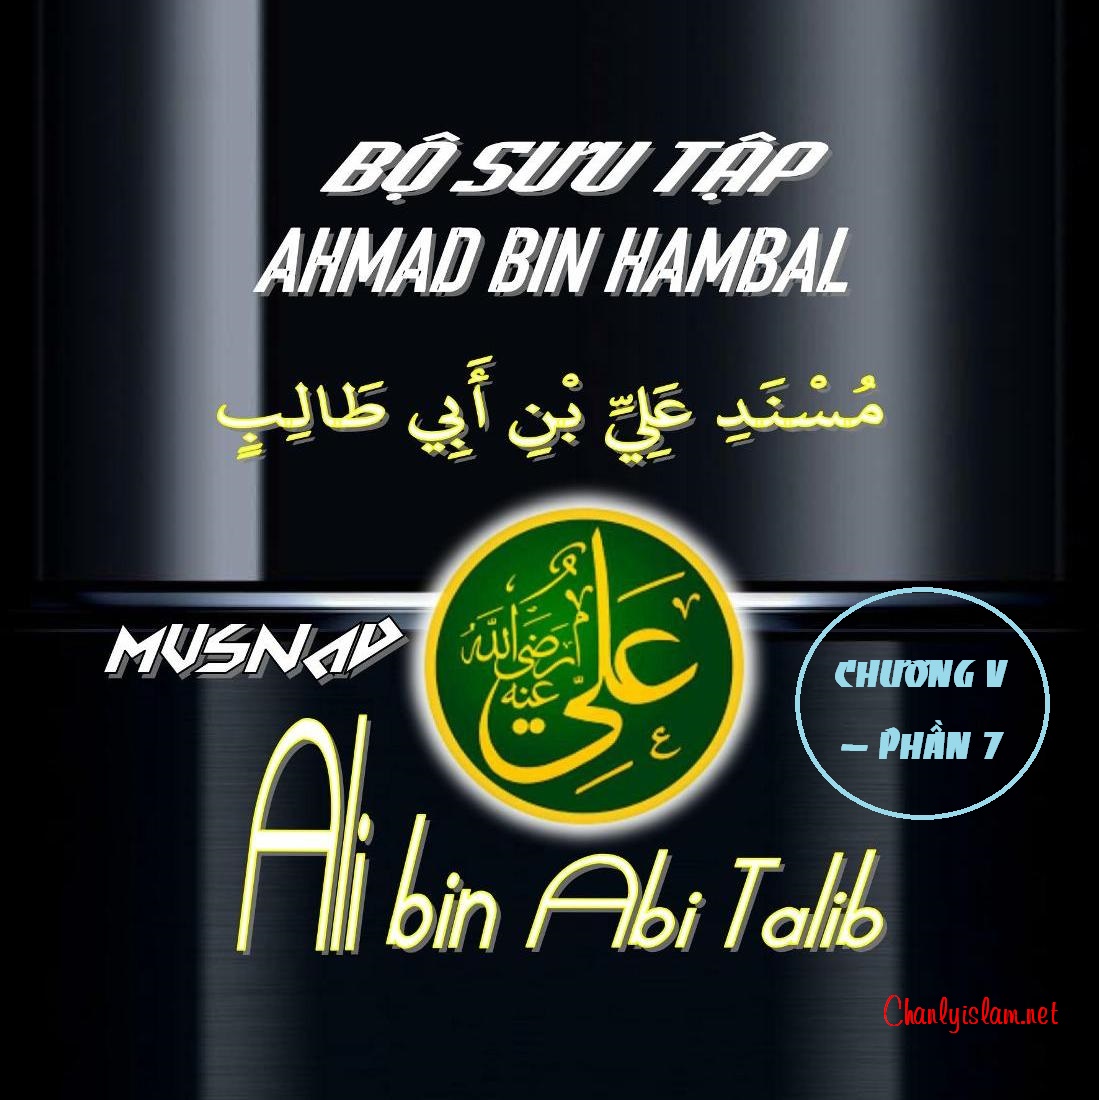 BỘ SƯU TẬP MUSNAD IMAM AHMAD IBN HANBAL - CHƯƠNG V - MUSNAD ALI BIN ABI TALIB - PHẦN 7